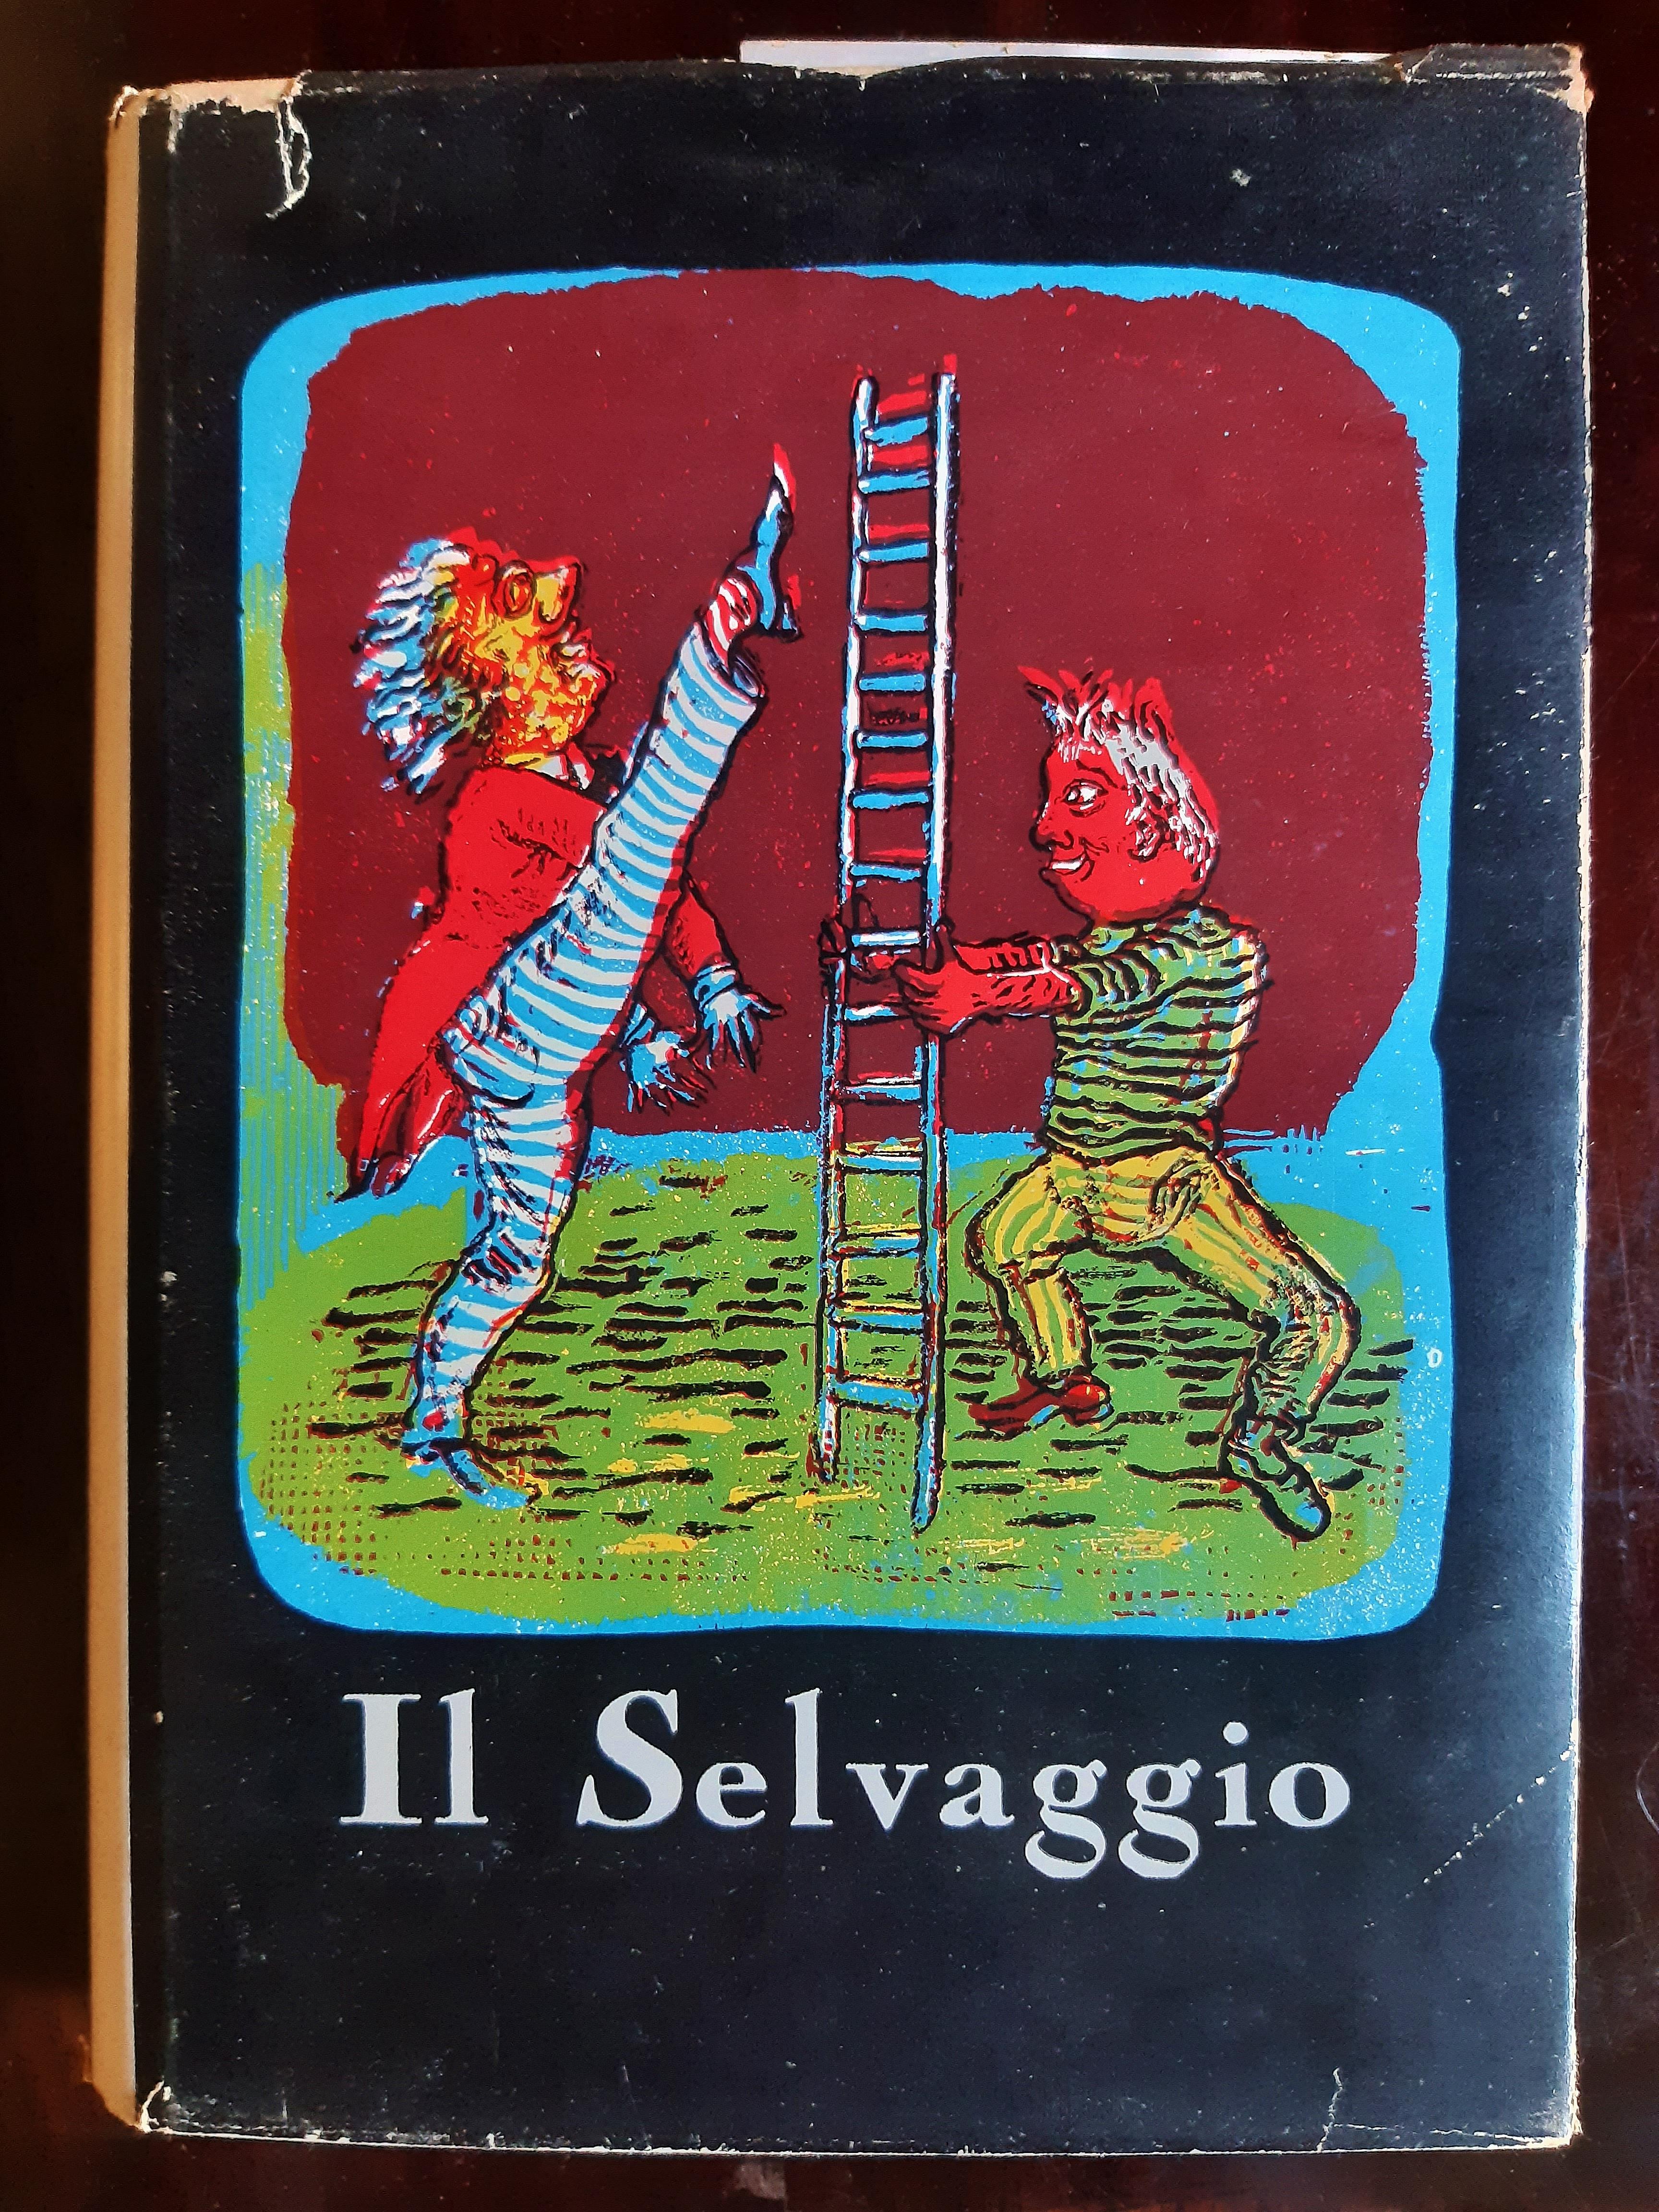 Il Selvaggio - Livre rare illustré par Mino Maccari - 1955